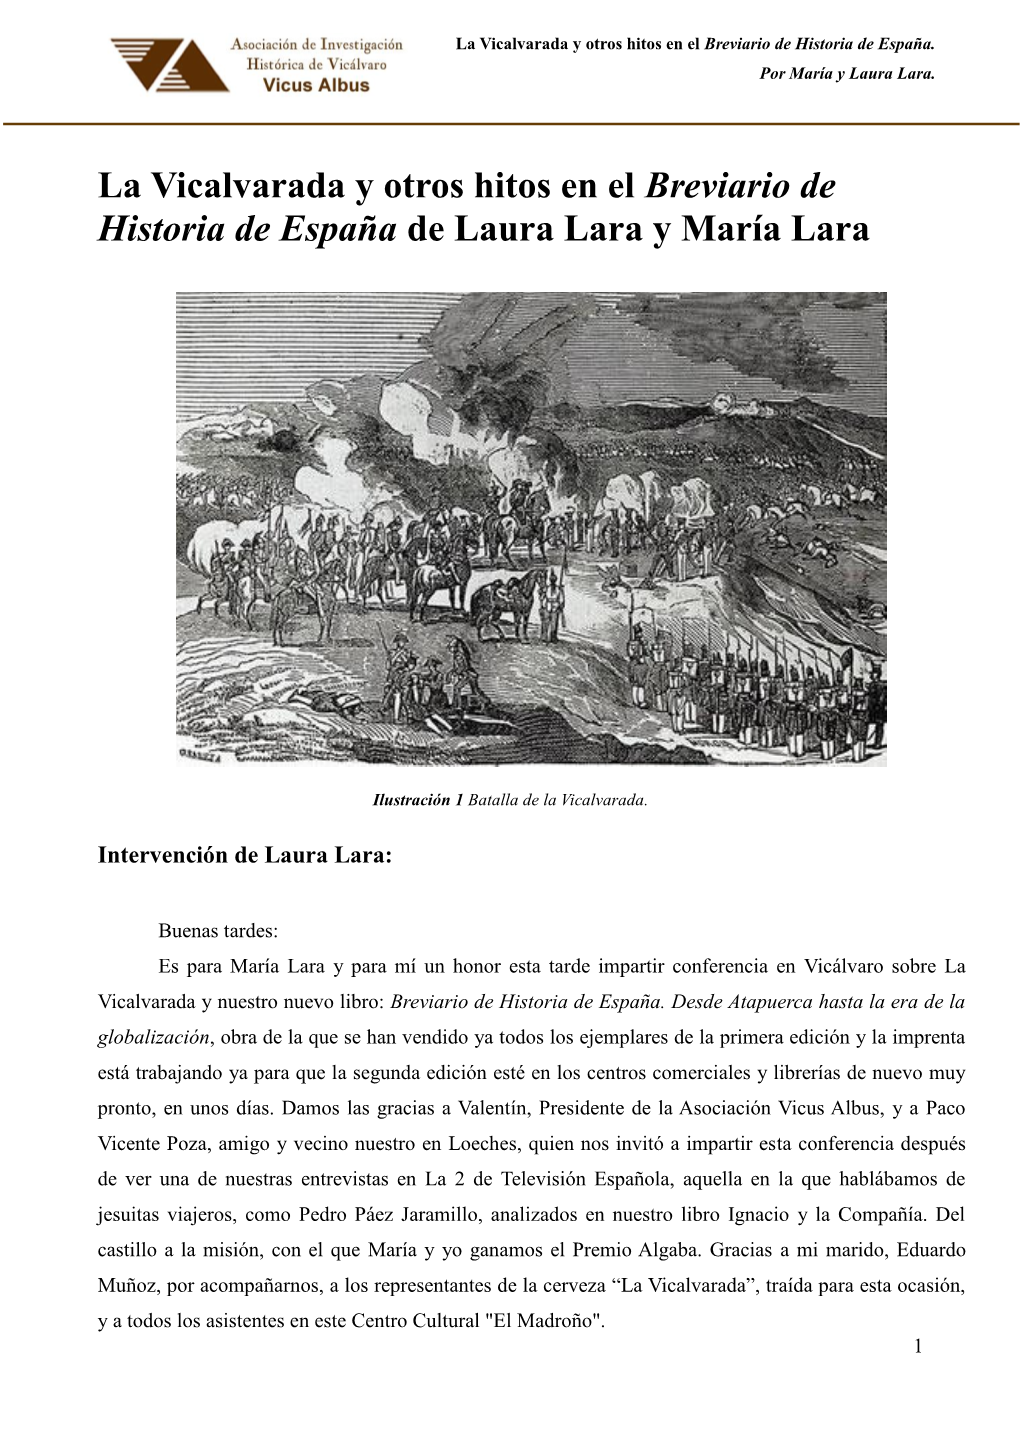 La Vicalvarada Y Otros Hitos En El Breviario De Historia De España De Laura Lara Y María Lara